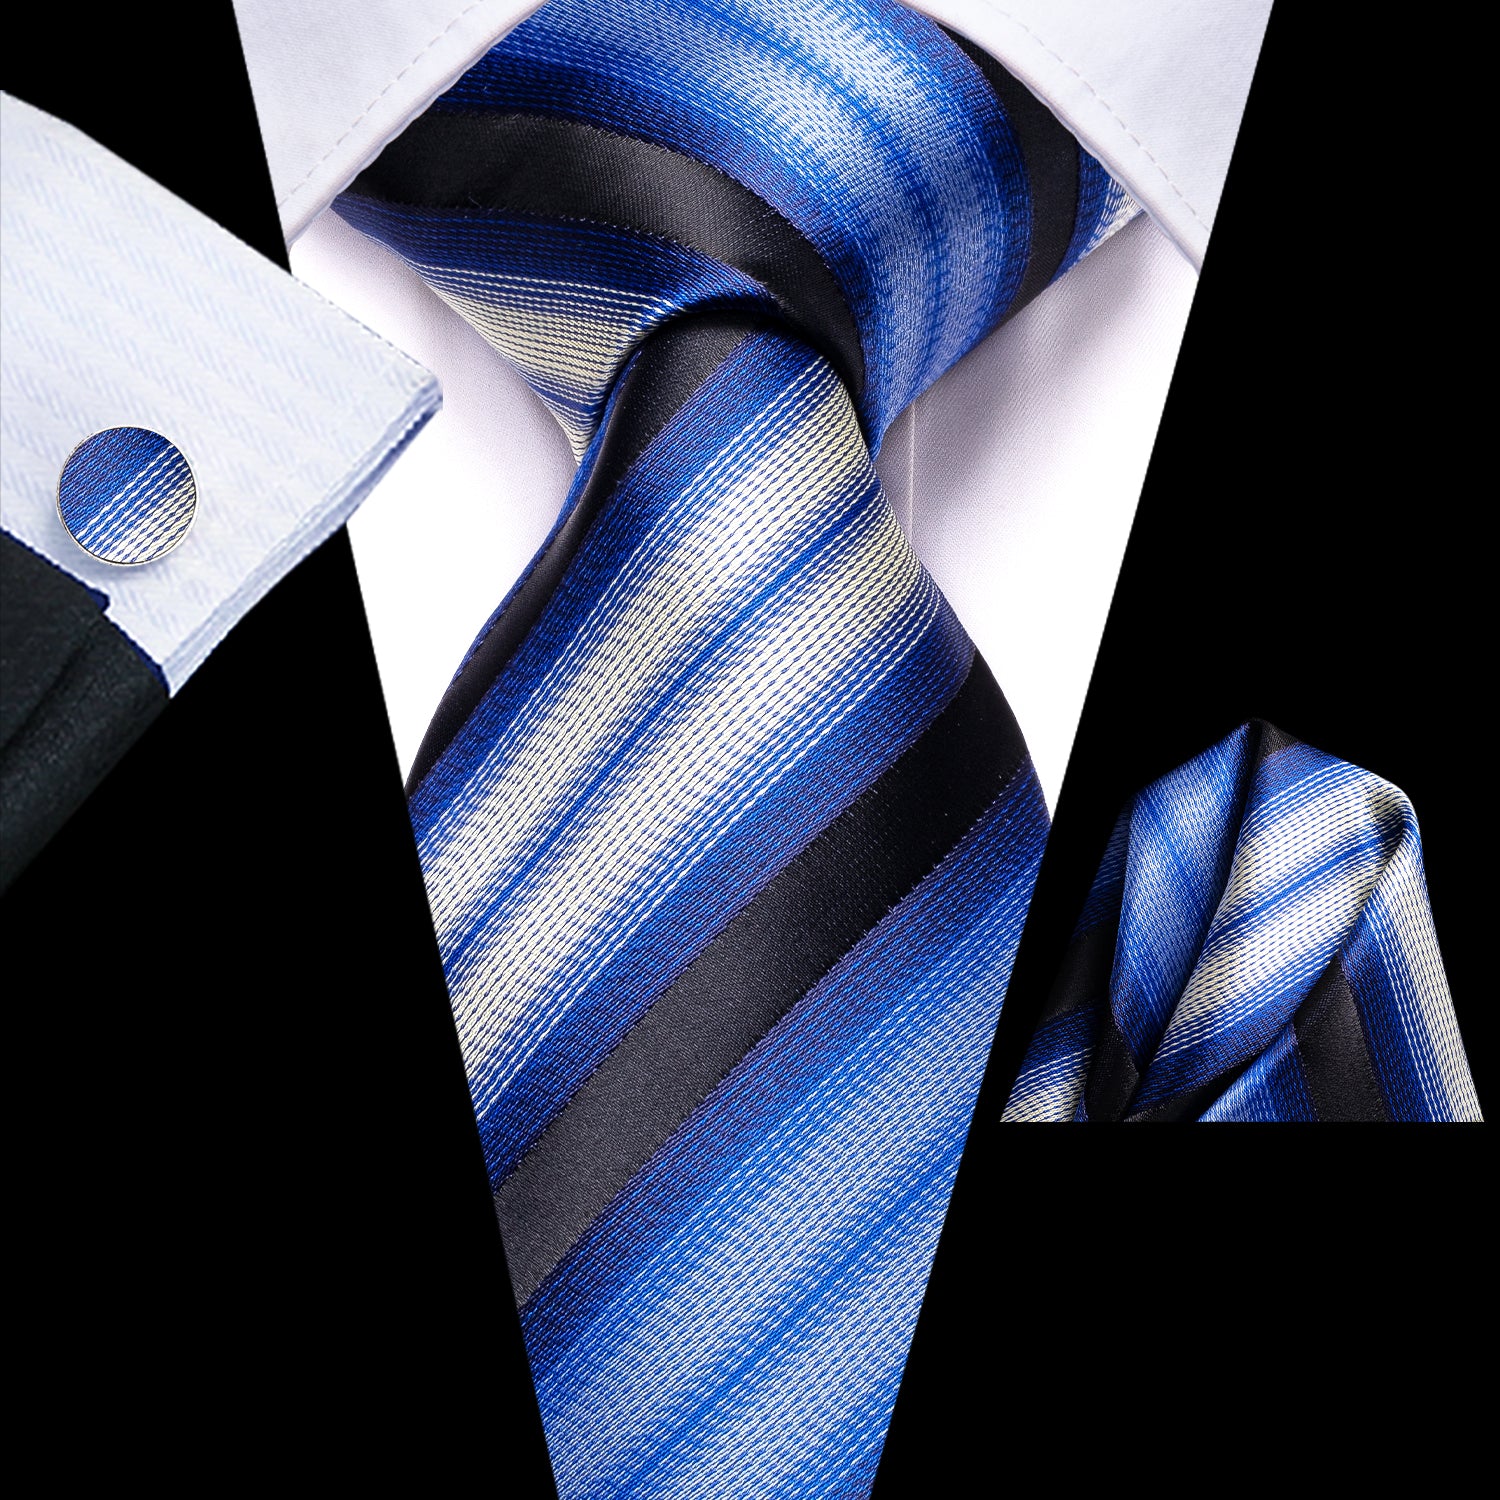 Blue Beige Black Strip Tie Pocket Square Cufflinks Set